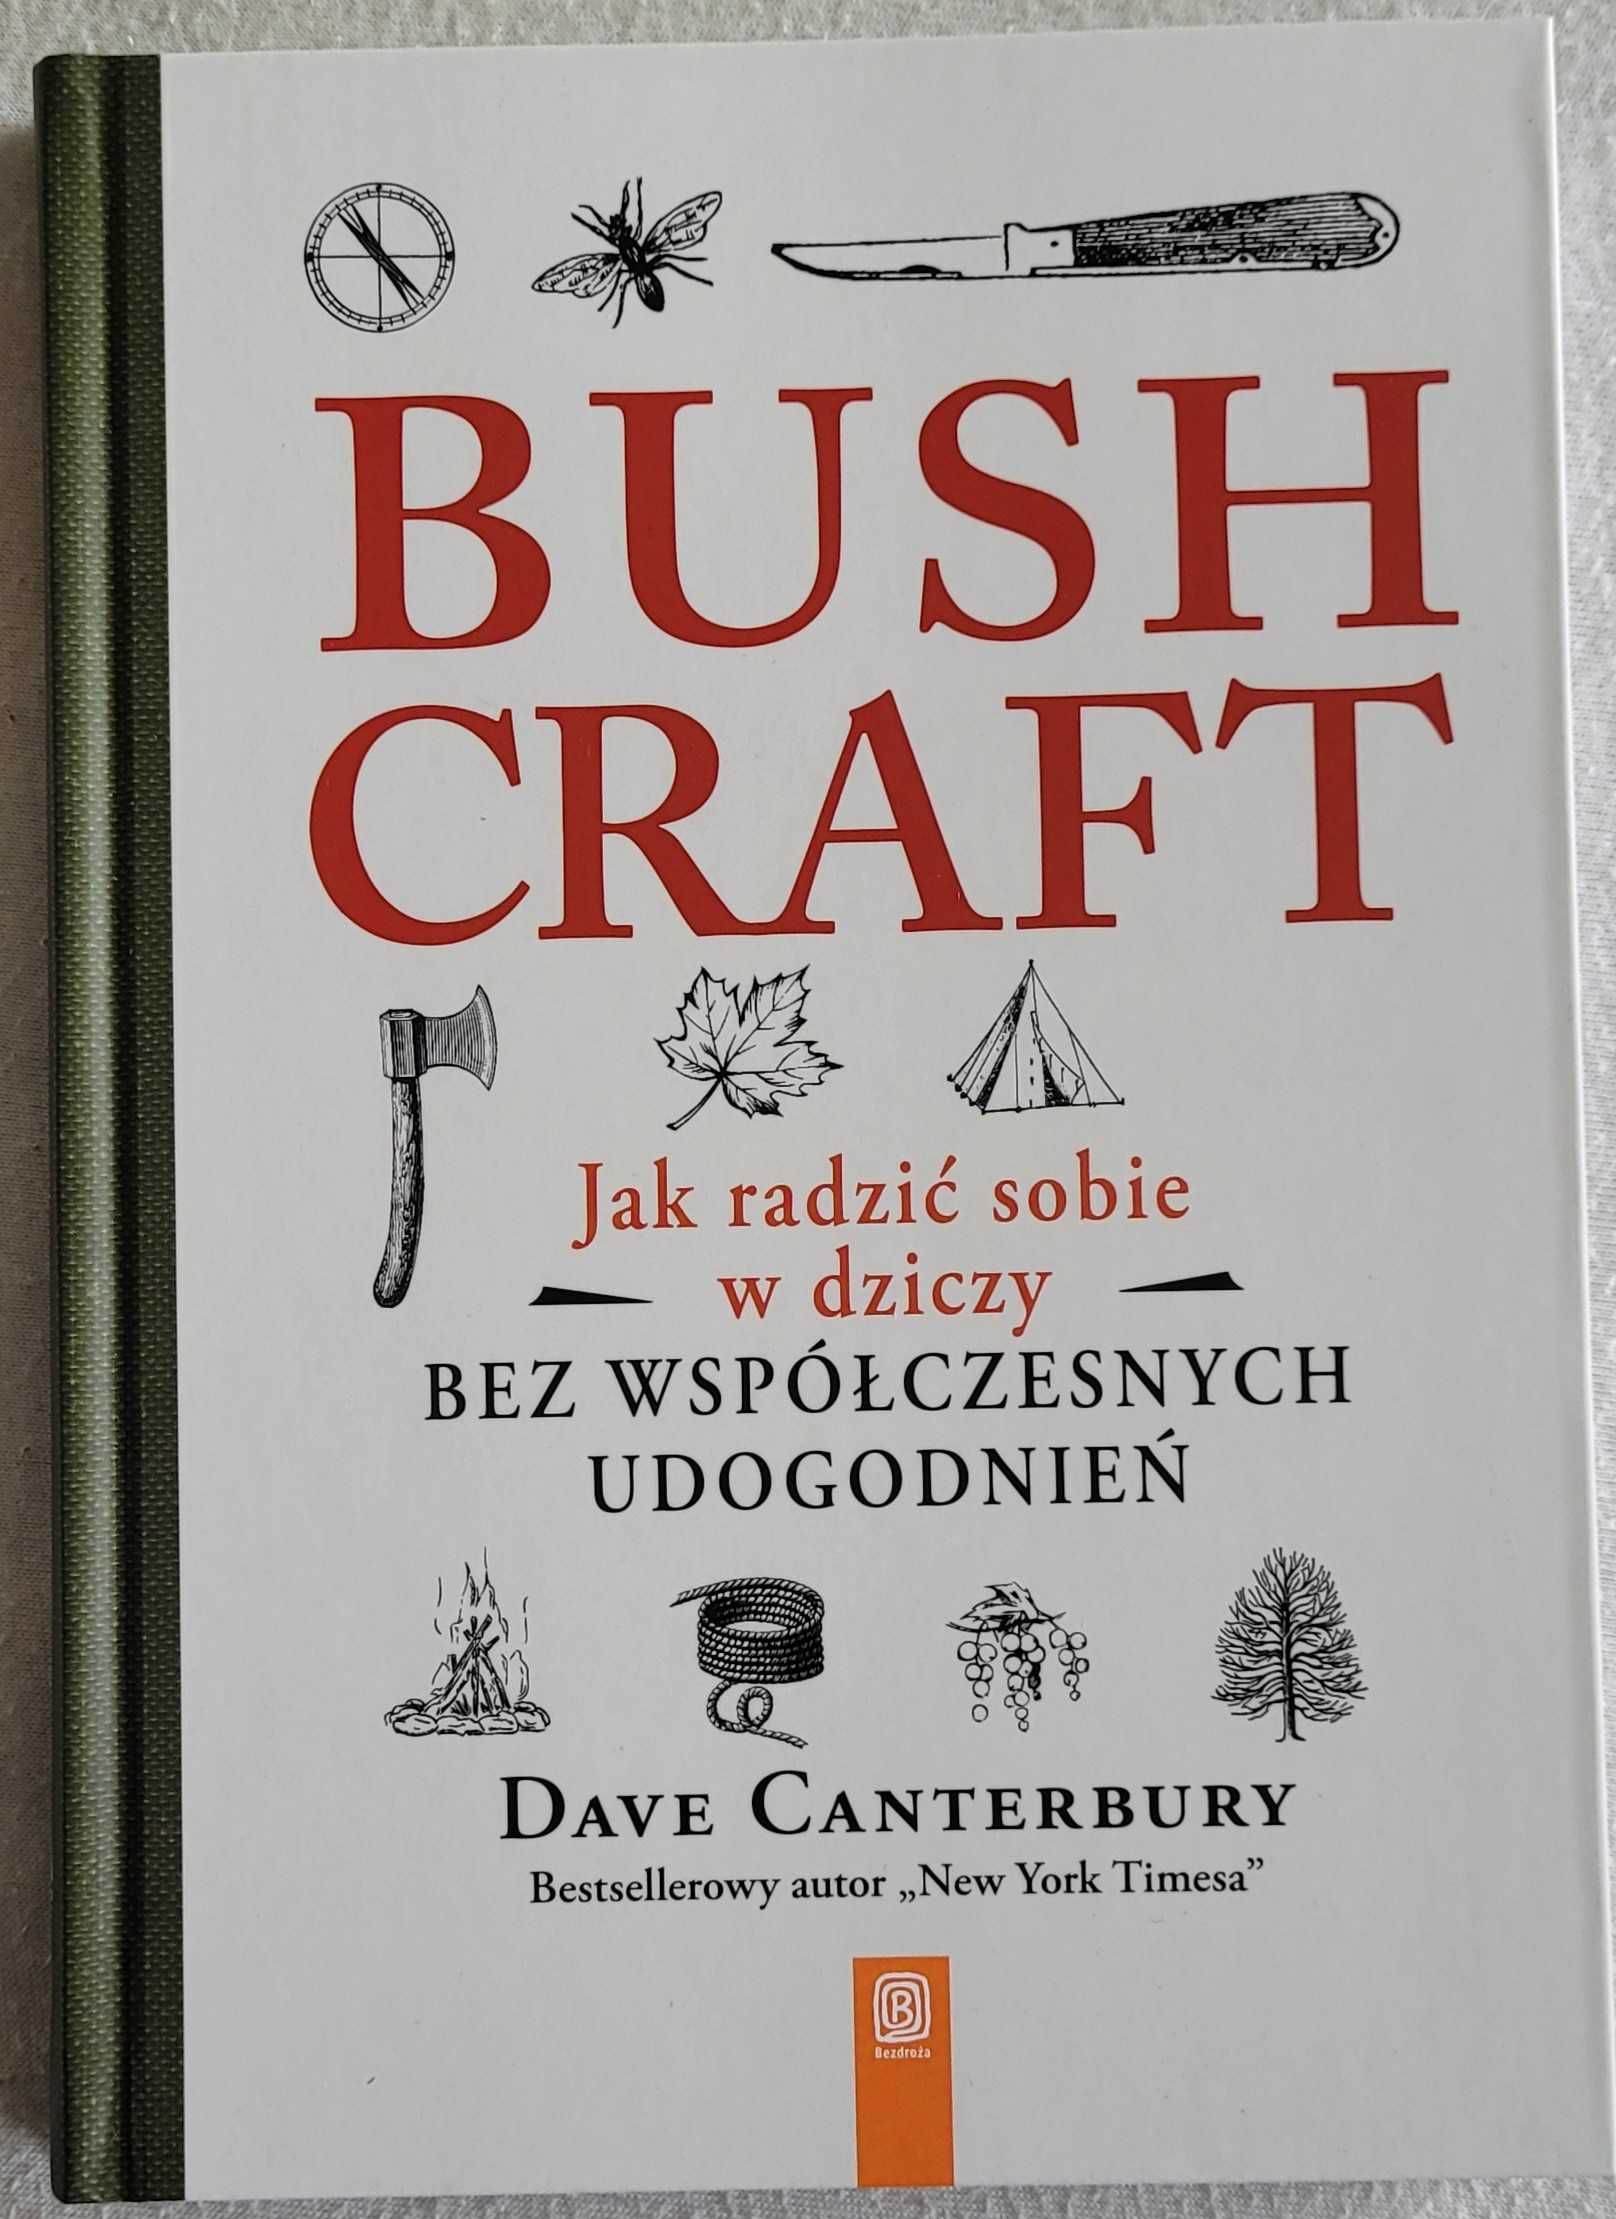 Książka pt. "Bushcraft..."